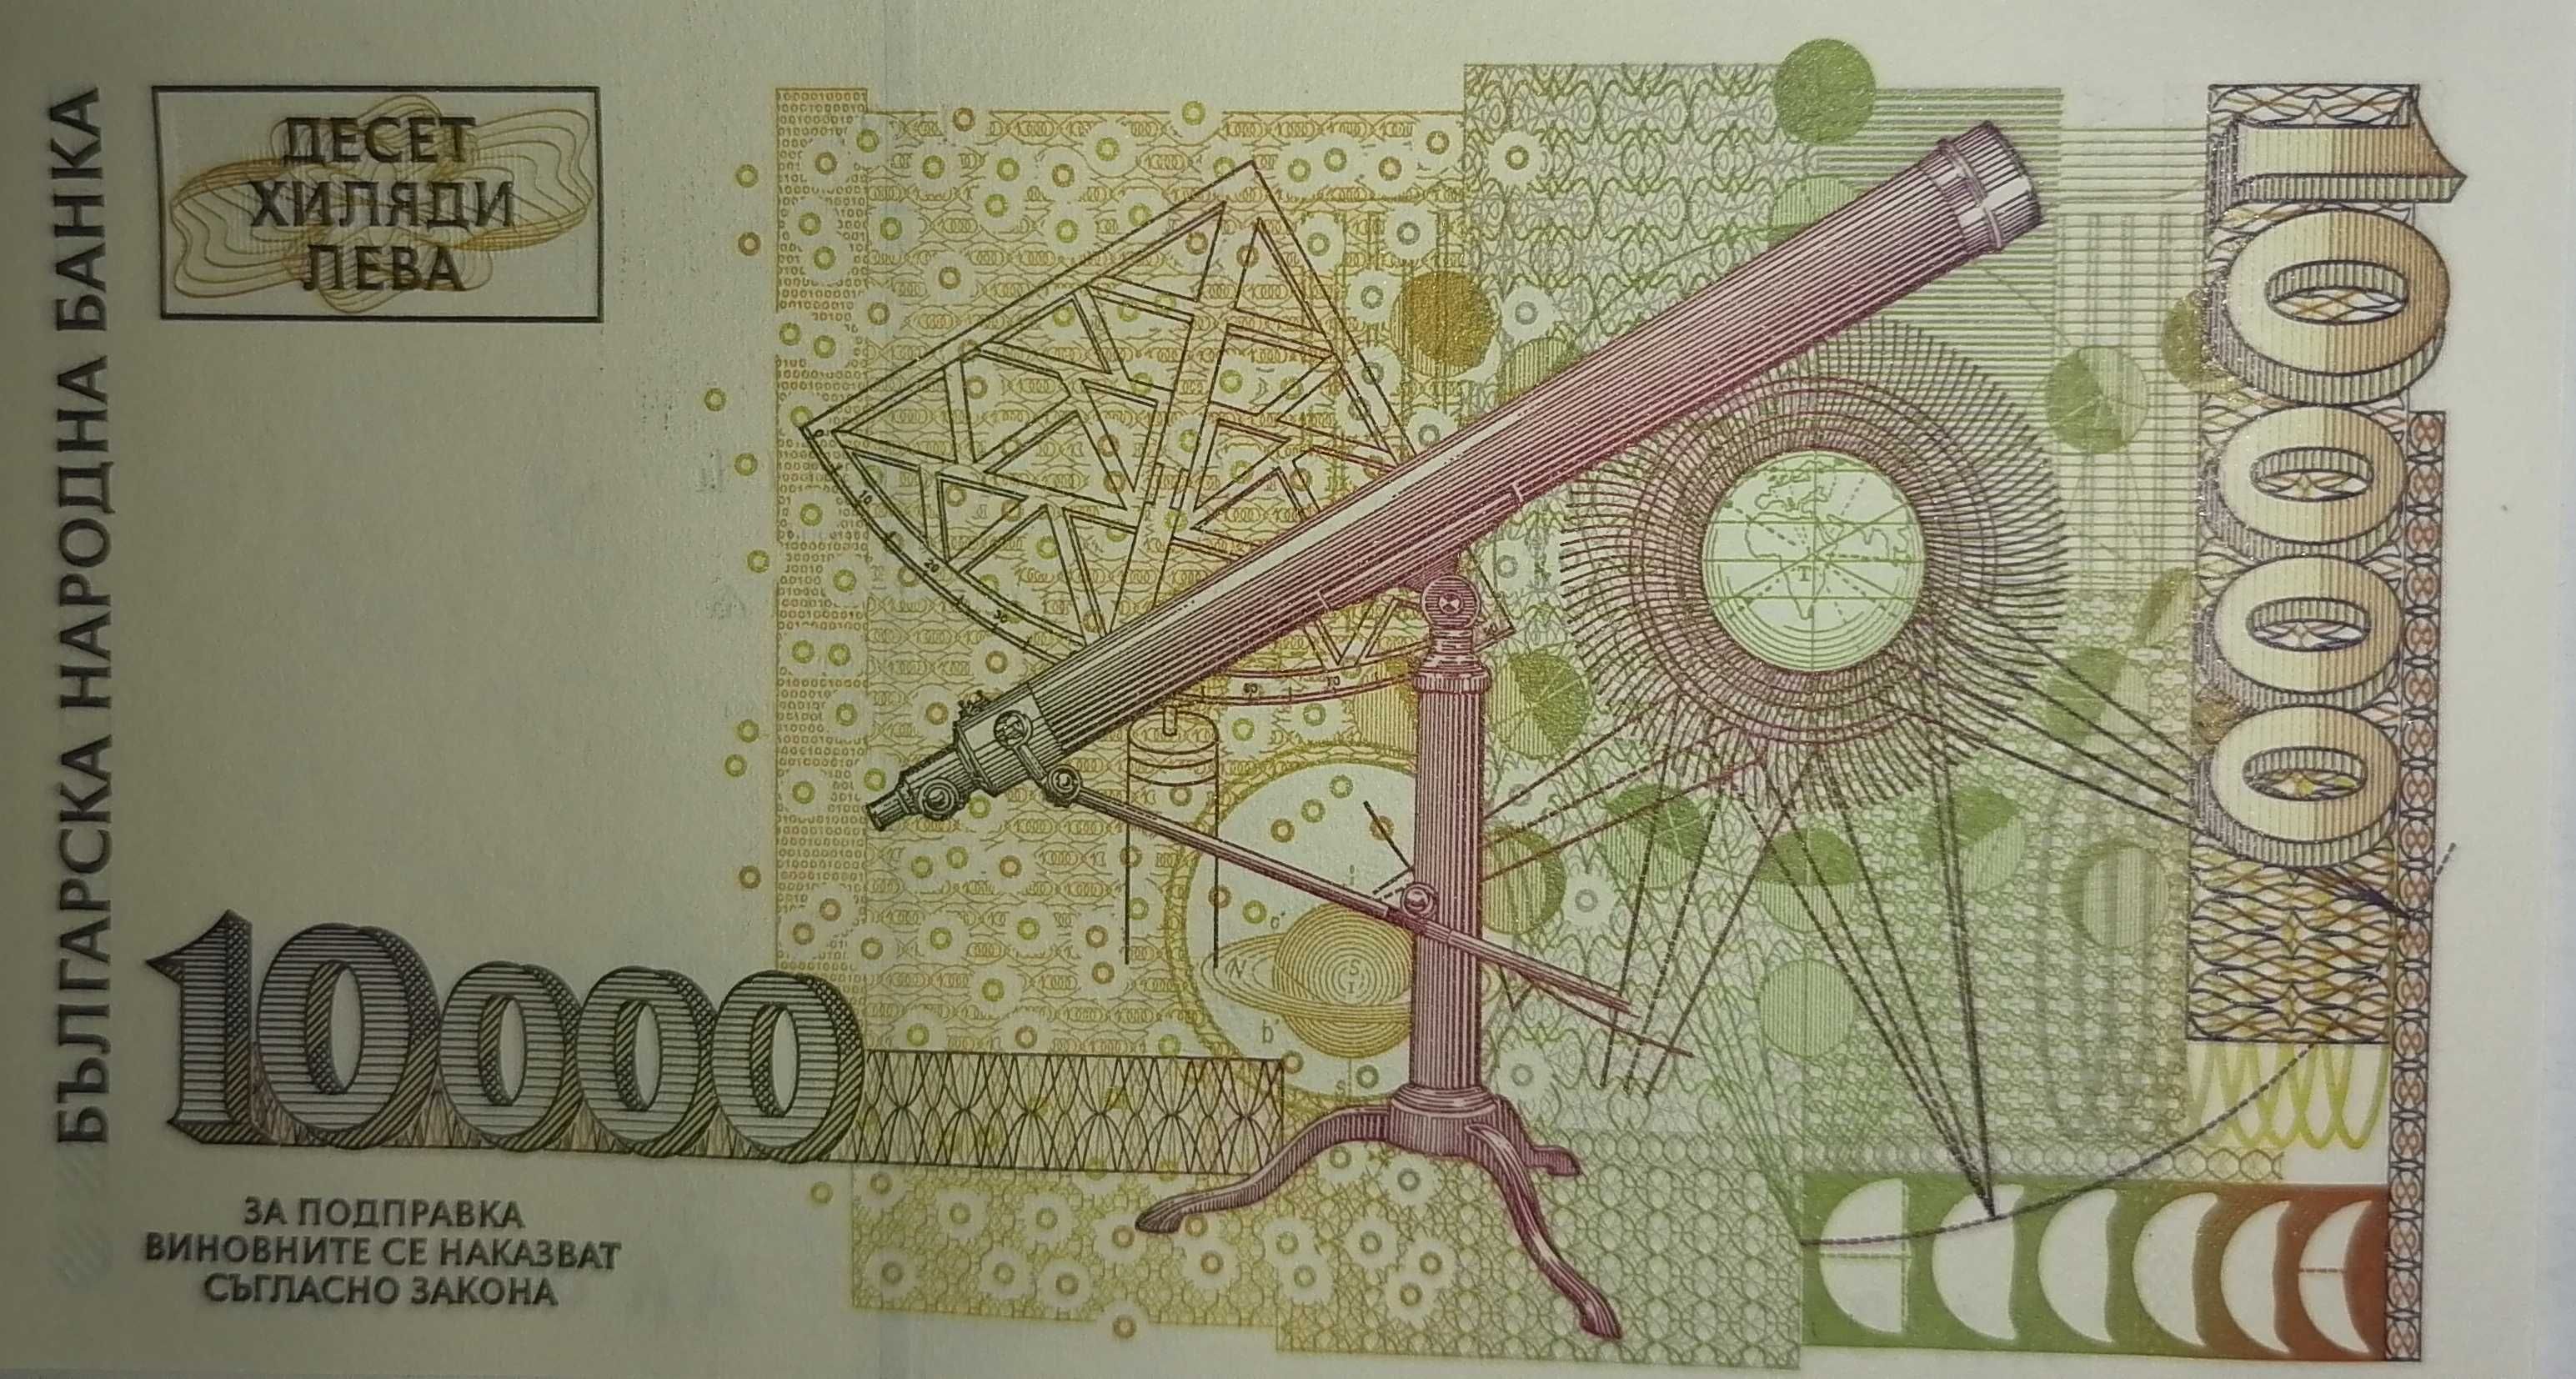 Банкнота от 10000 лева, UNC, Петър Берон, 1997 г., България, АА